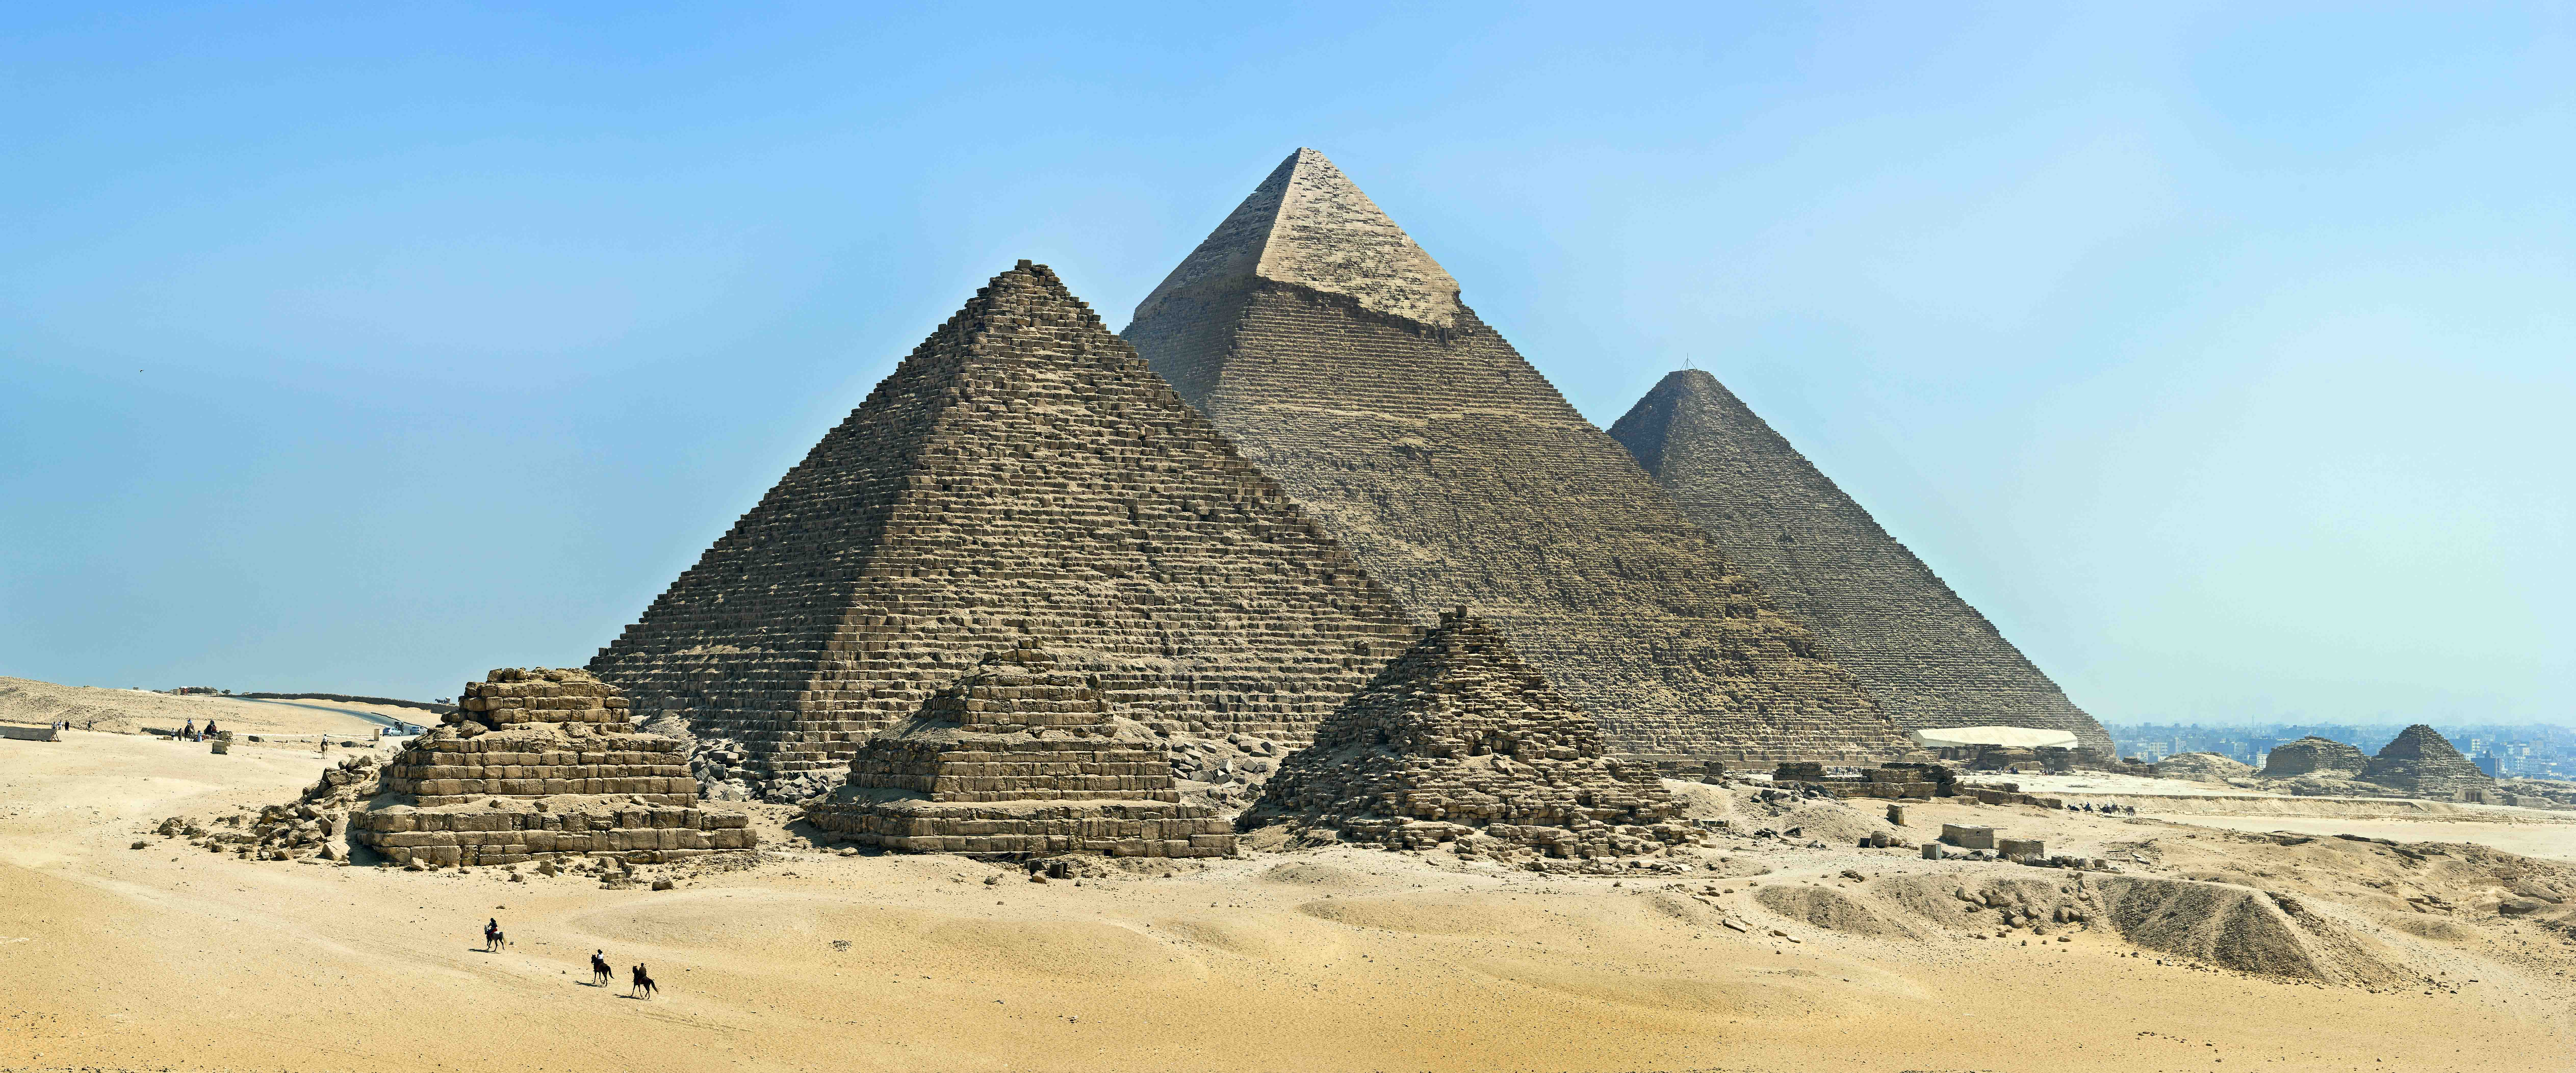 The Great Pyramids at Giza, Egypt (photo: KennyOMG, CC BY-SA 4.0)